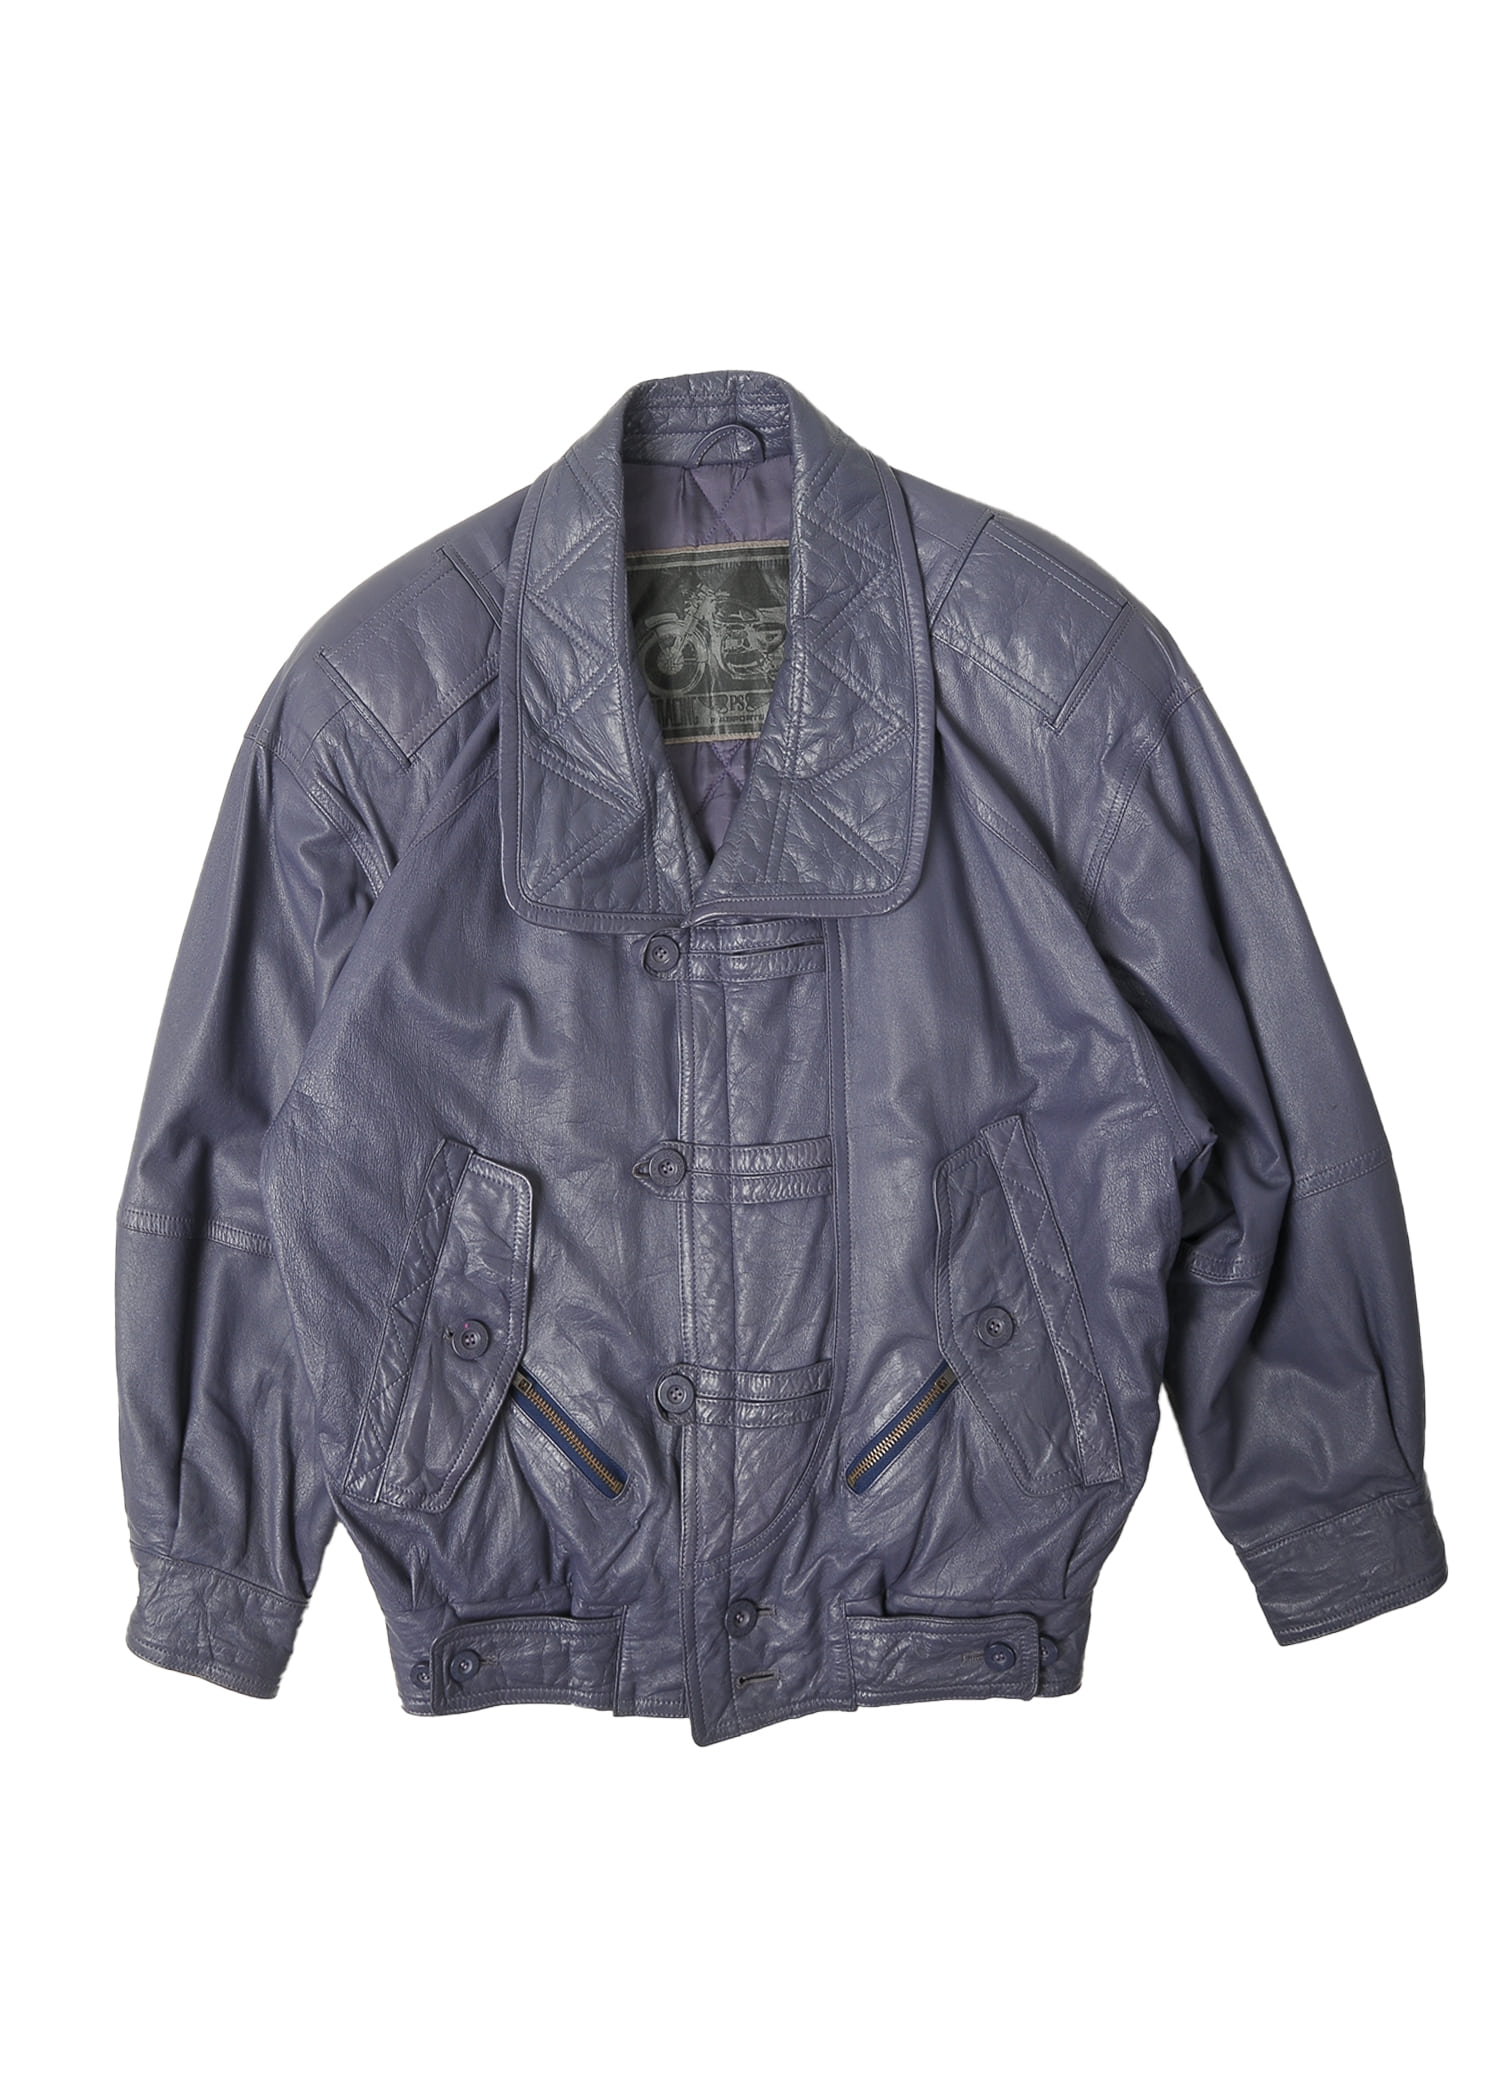 select vintage : purple leather jacket